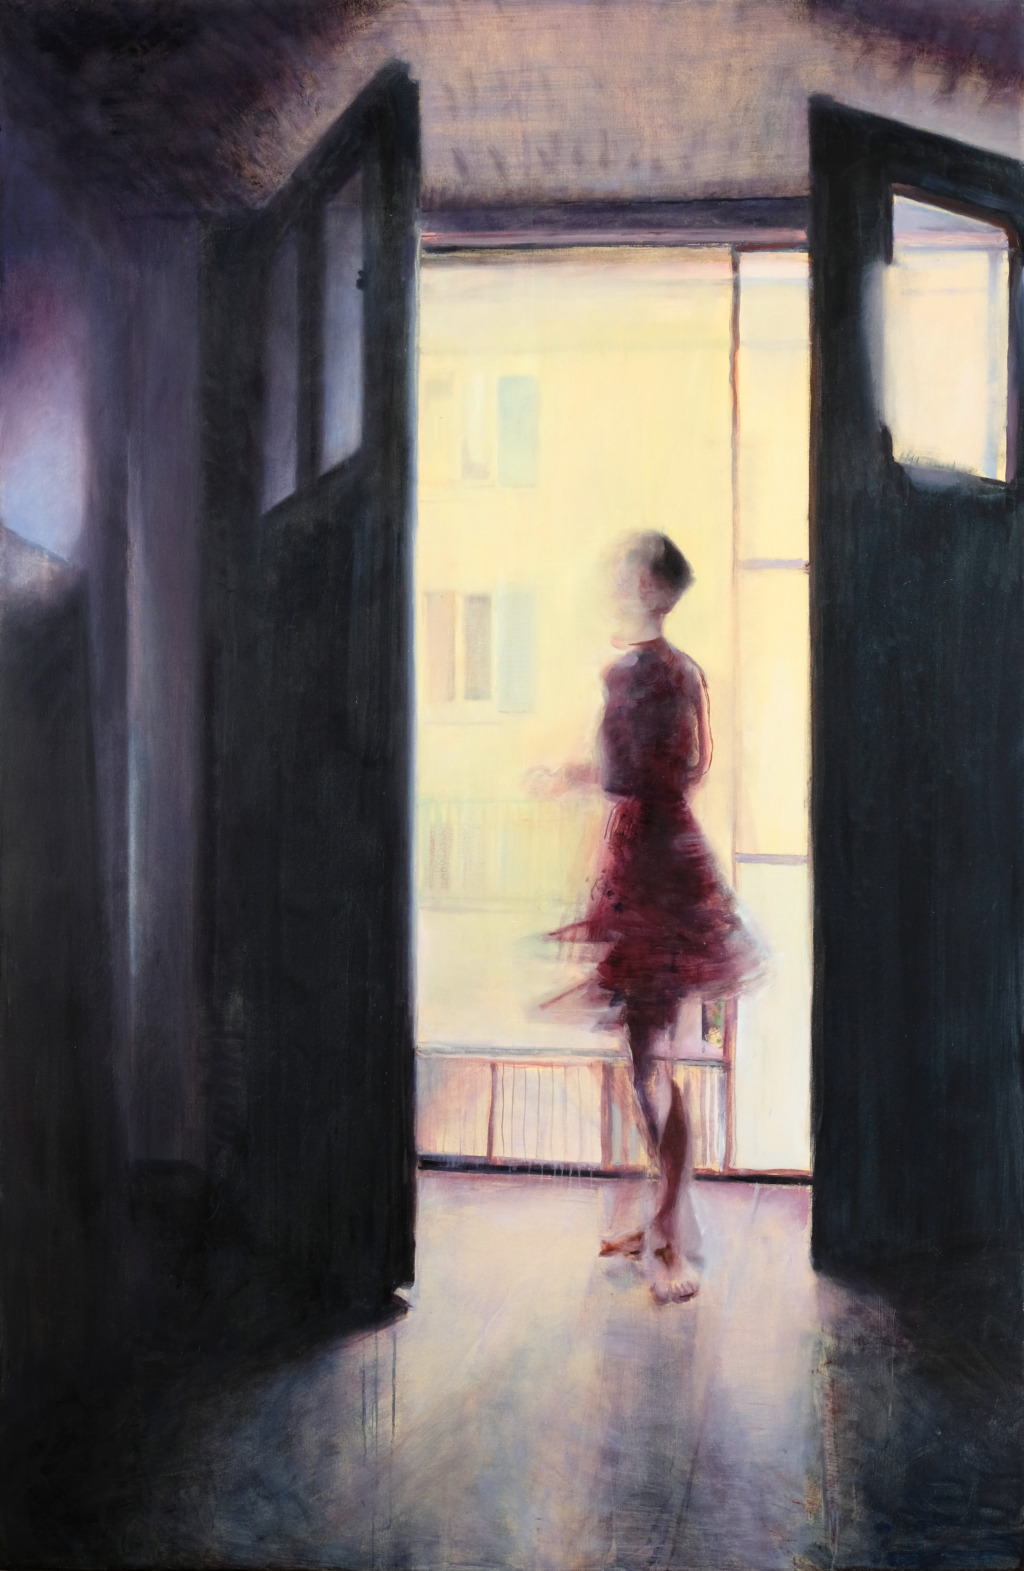 Andrea Muheim, Sommer 2020, 2021
200 x 130 cm
Oil on canvas